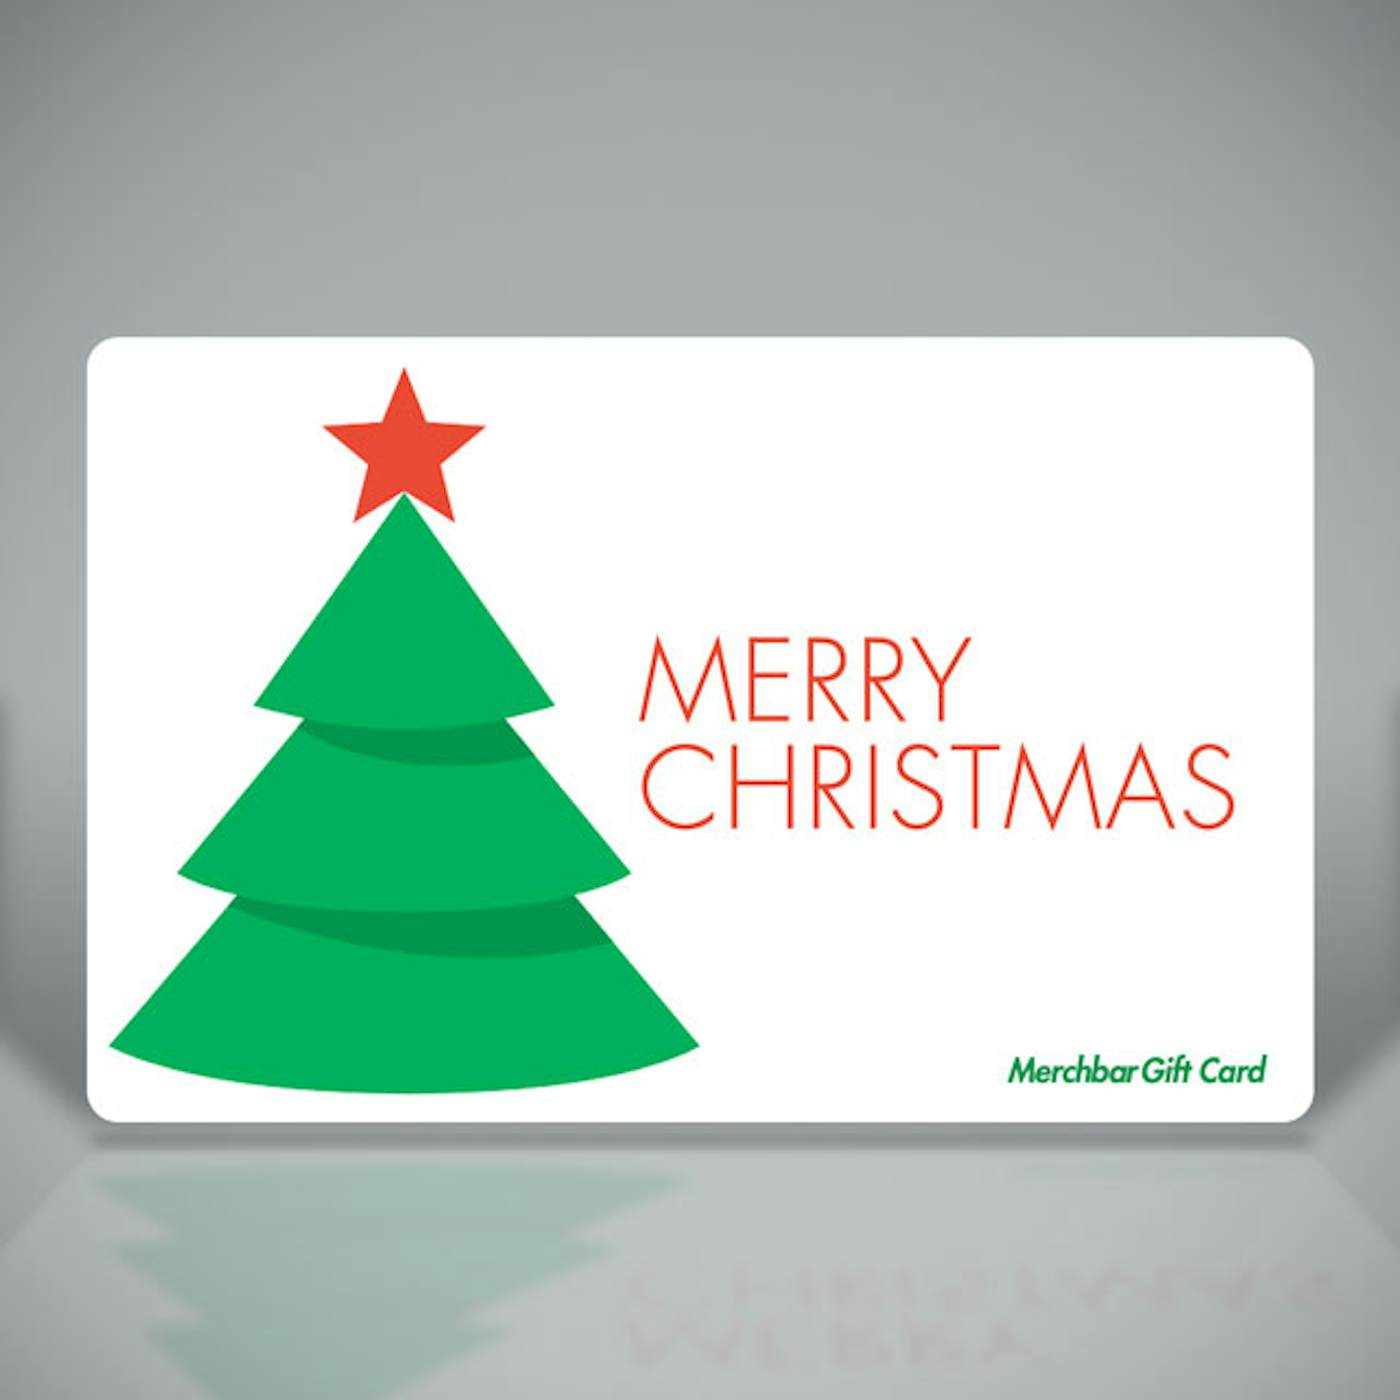 Merchbar Gift Cards Merry Christmas